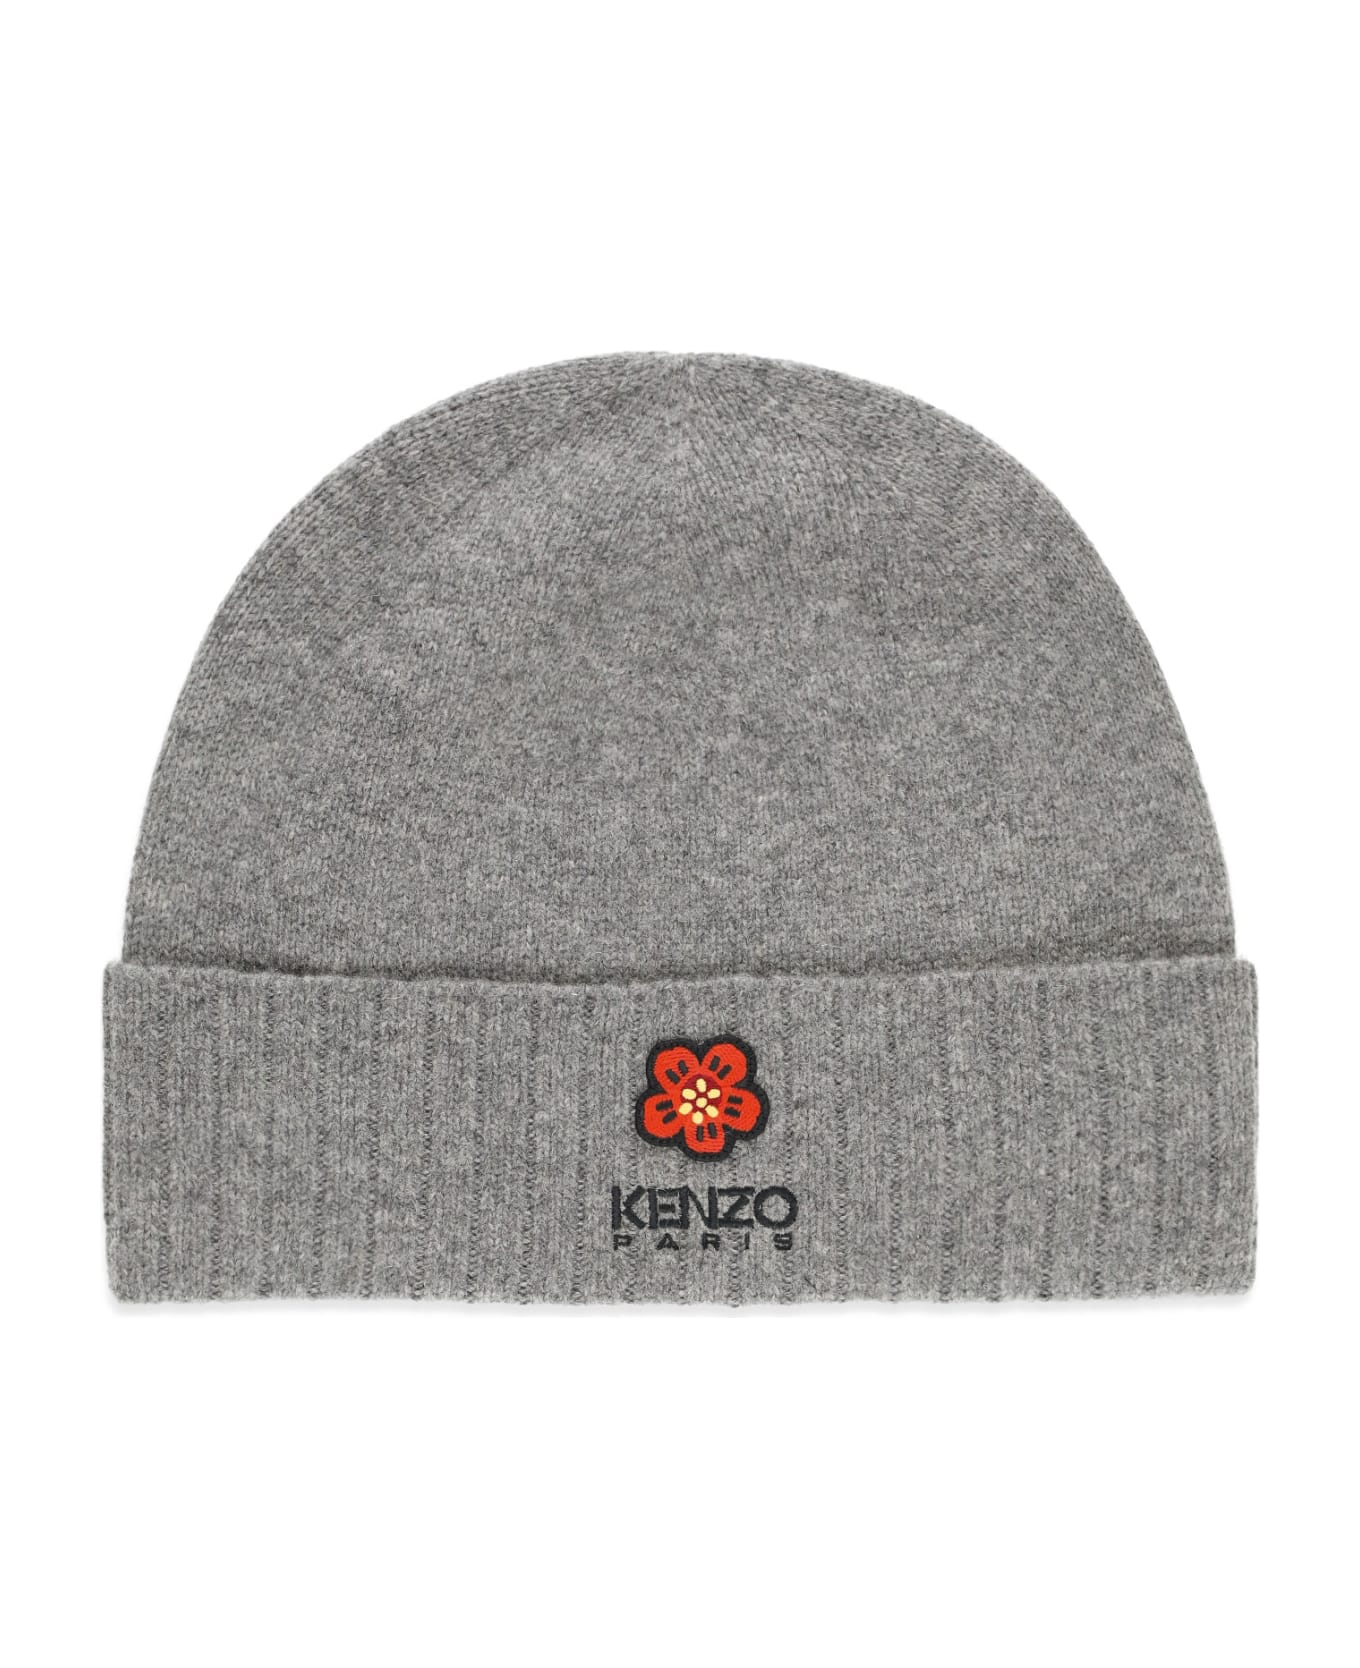 Kenzo Flower Beanie - Grey 帽子